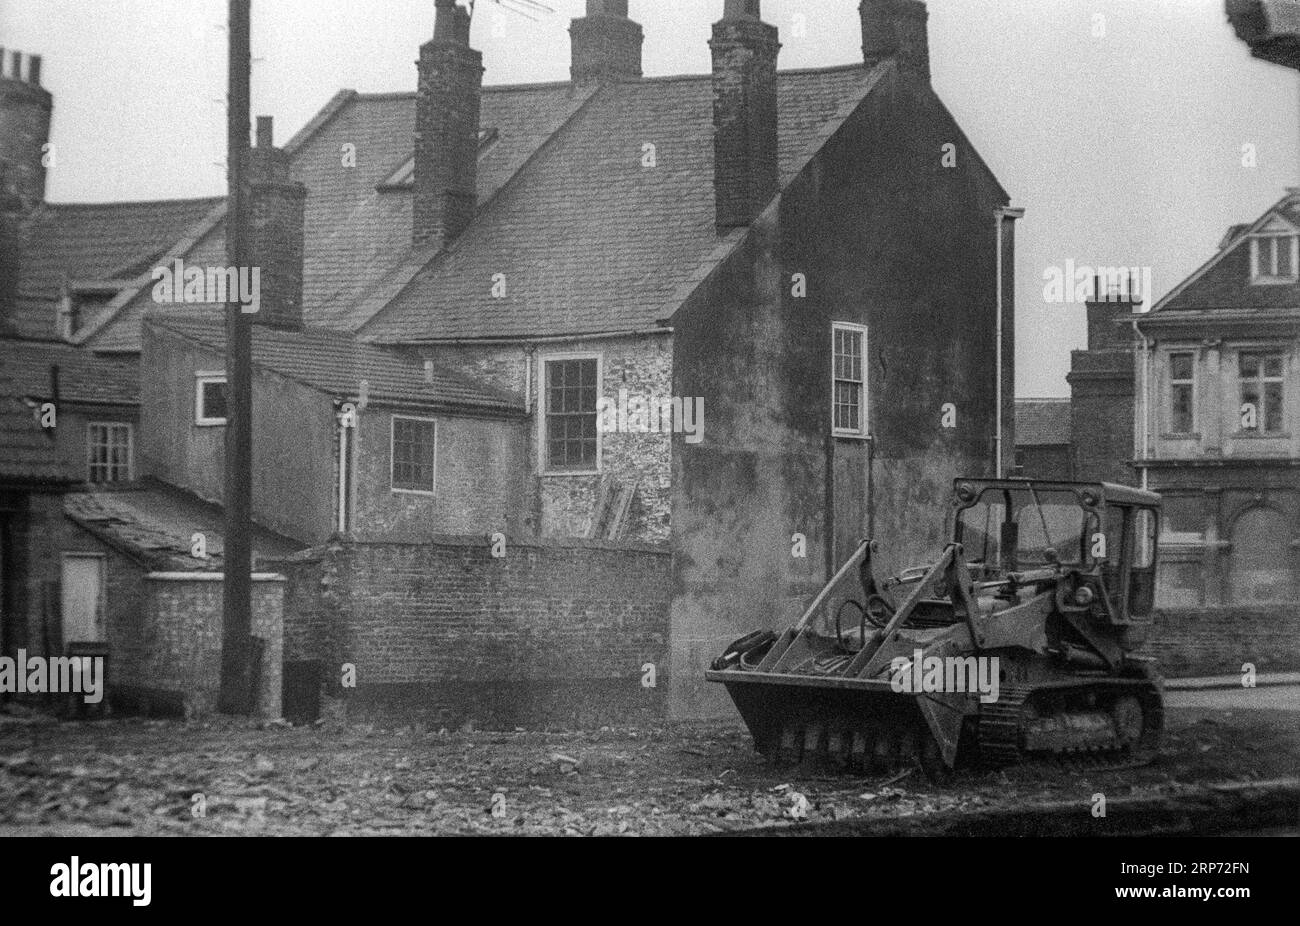 Fotografia d'archivio in bianco e nero della riqualificazione dei primi anni '1970 dell'angolo tra Queen Street e Purfleet Place a King's Lynn, Norfolk. Foto Stock